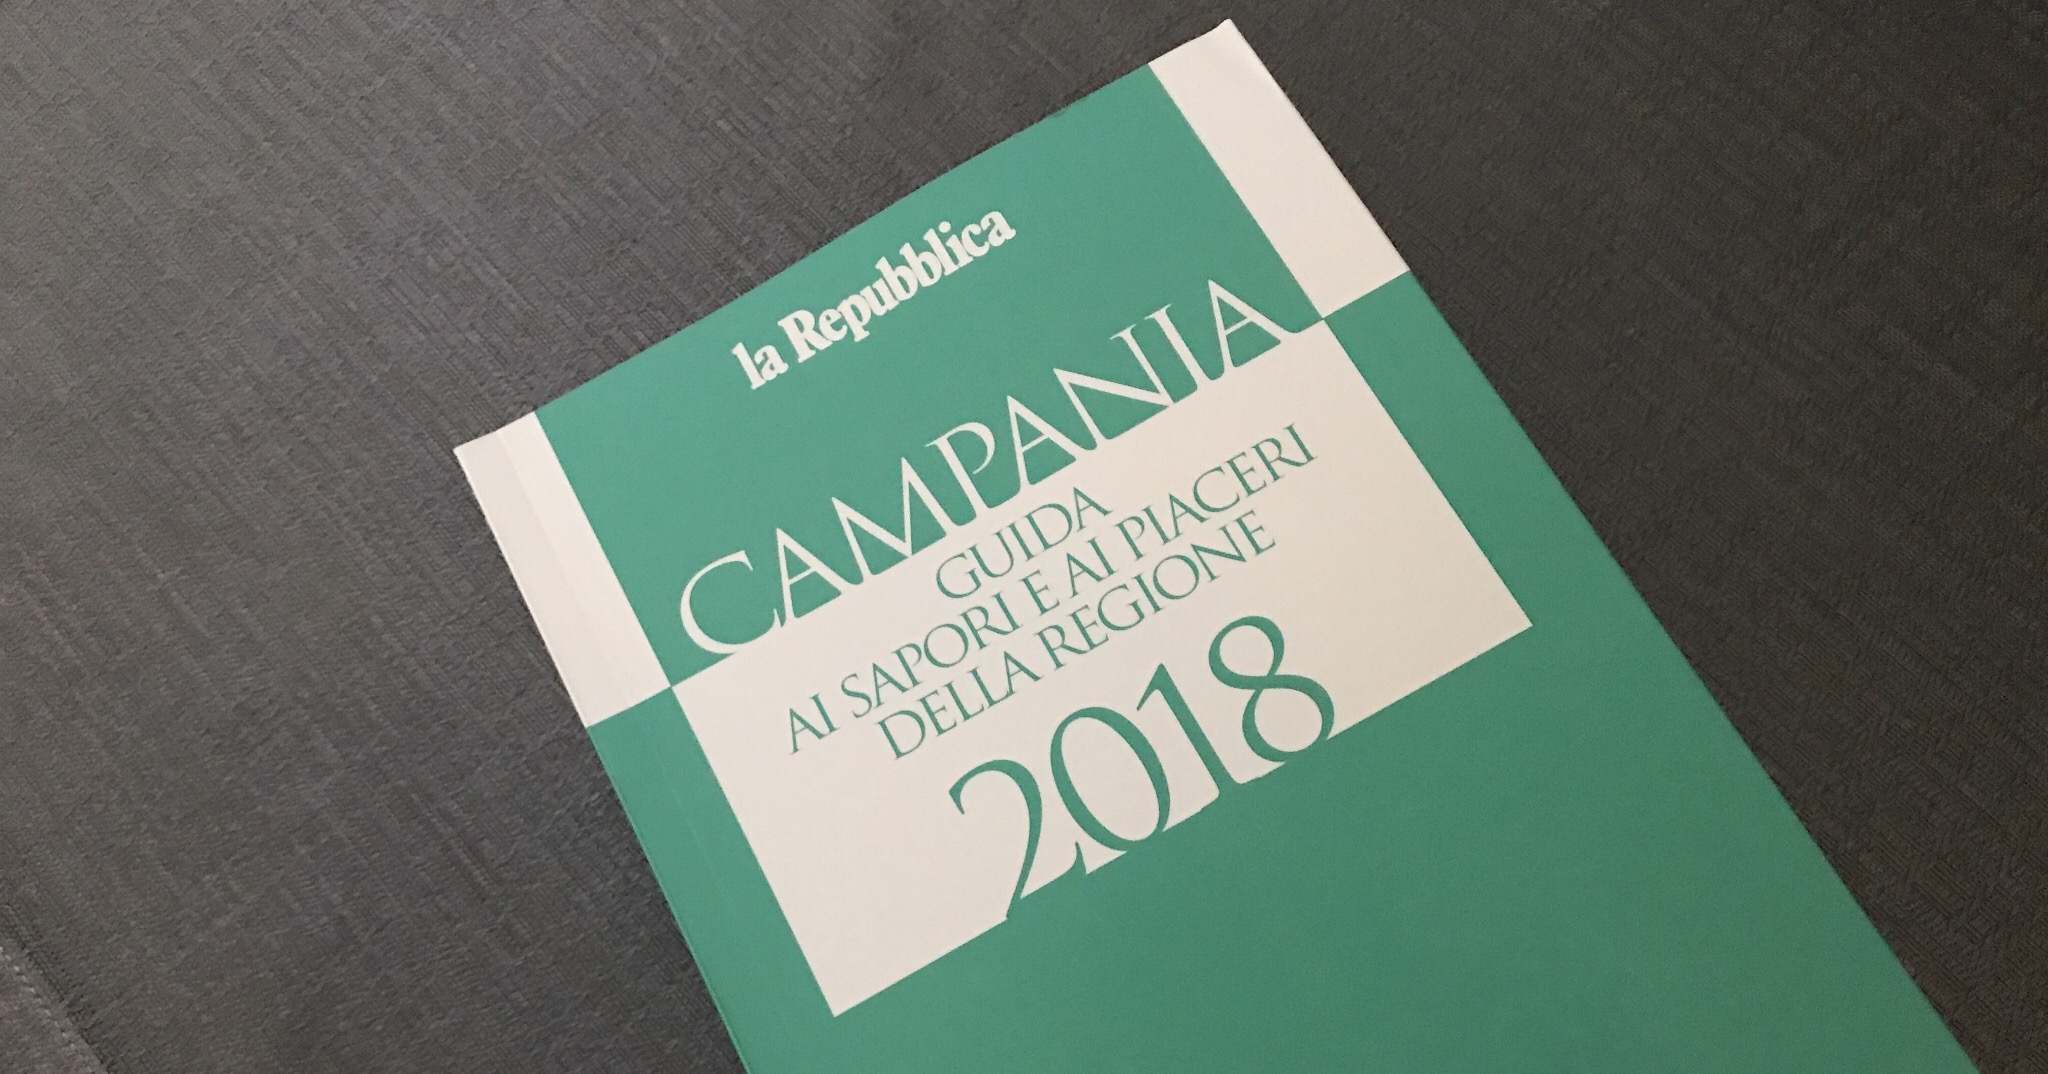 Guida Repubblica 2018 Campania enogastronomia 